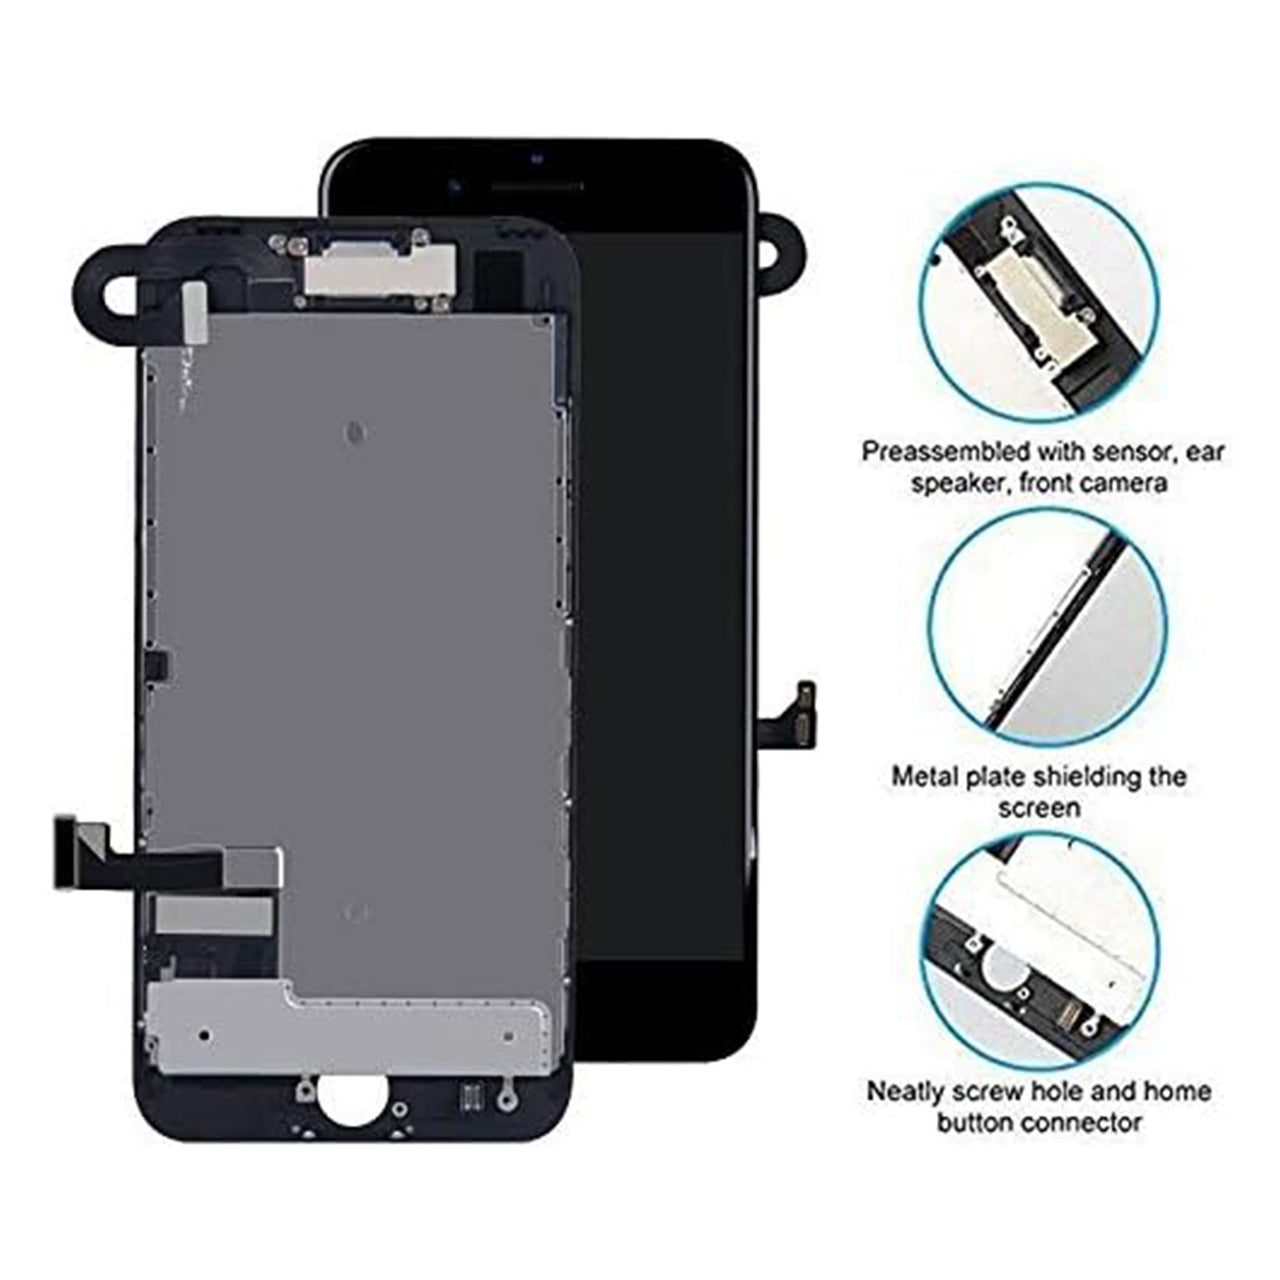 iPhone 7 reemplazo de la pantalla LCD y ensamblaje del digitalizador - iPhone 7 LCD Screen Replacement and Digitizer Assembly